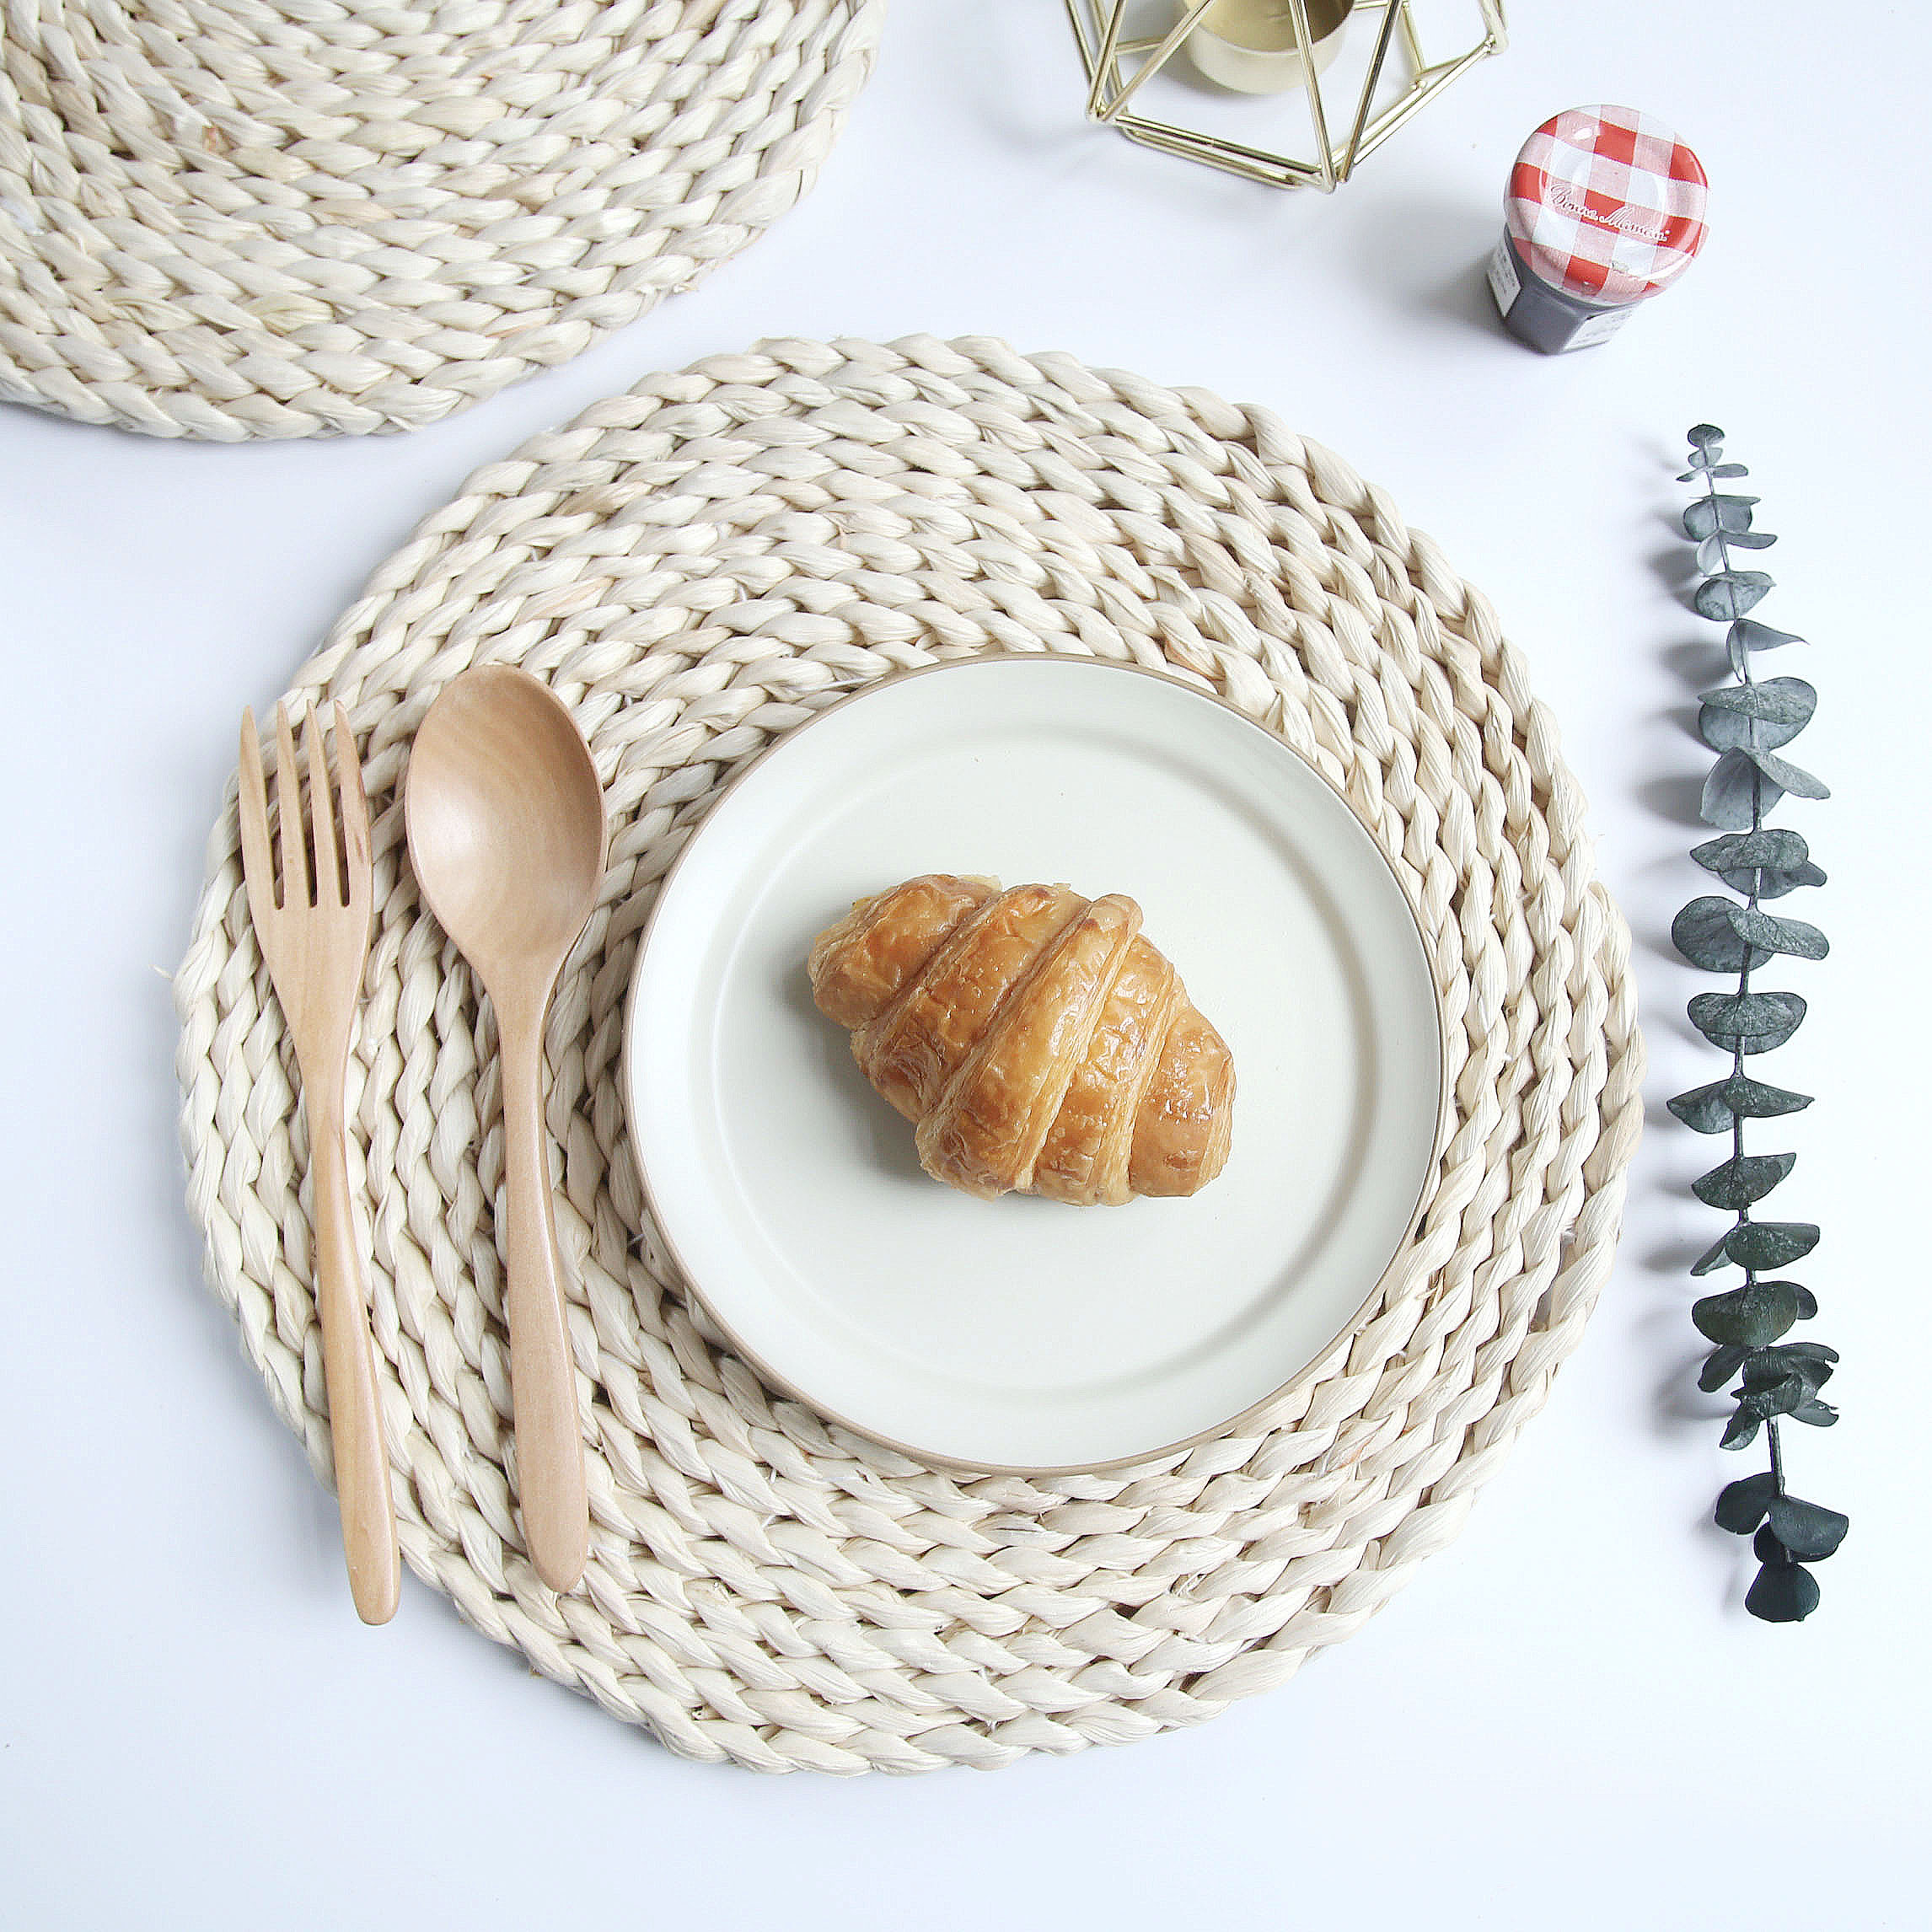 北欧天然手工玉米垫 ins美食拍照道具摄影背景布辅助类摆件 装饰